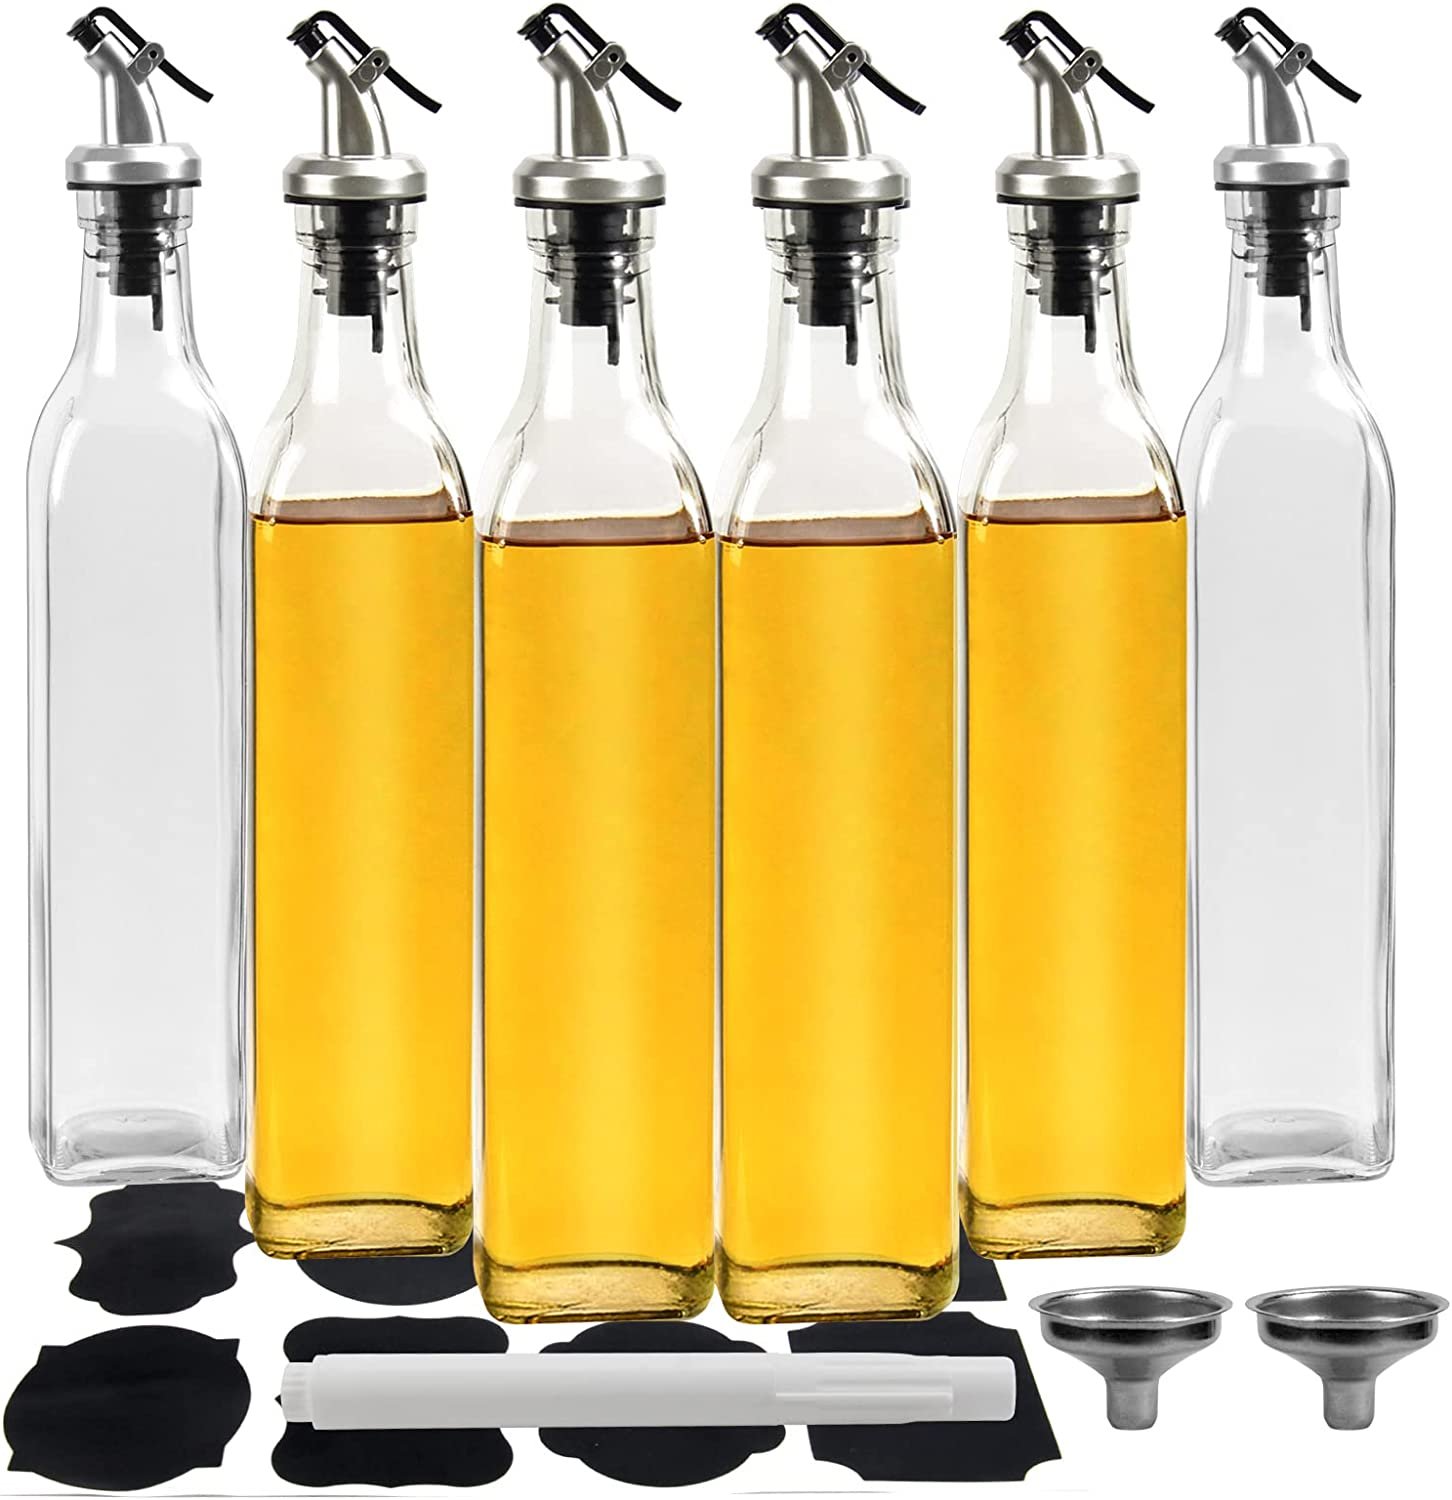 Oil and Vinegar Dispensers